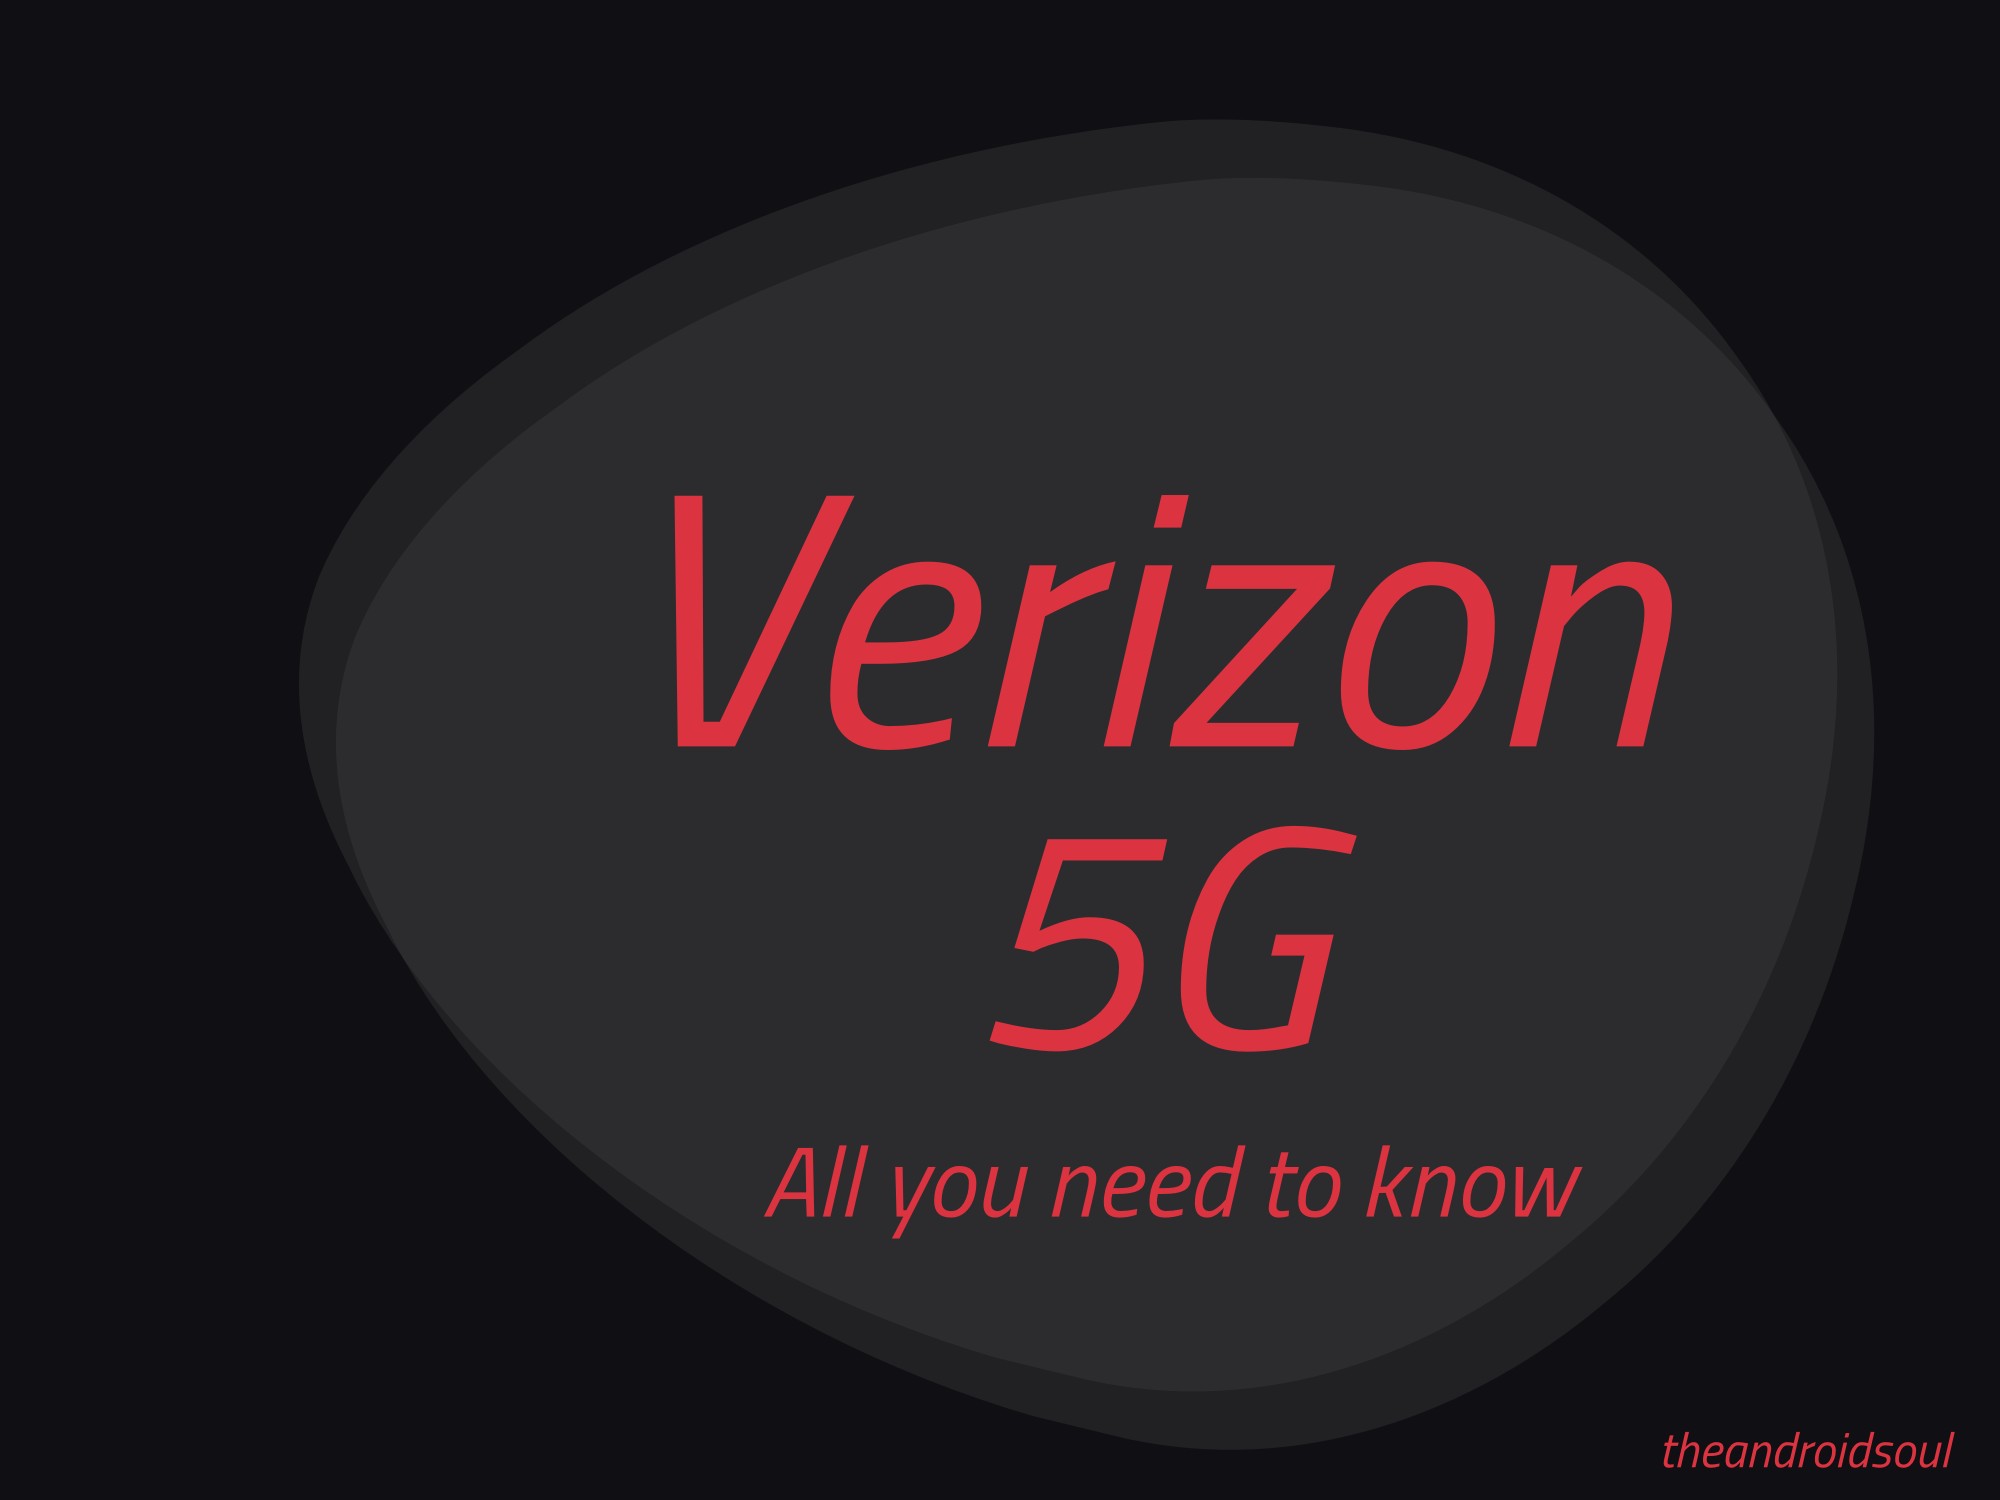 Du kan nu få Verizon 5G i 4 andra städer: Indianapolis, Atlanta, Detroit och Washington DC (lista över områden)